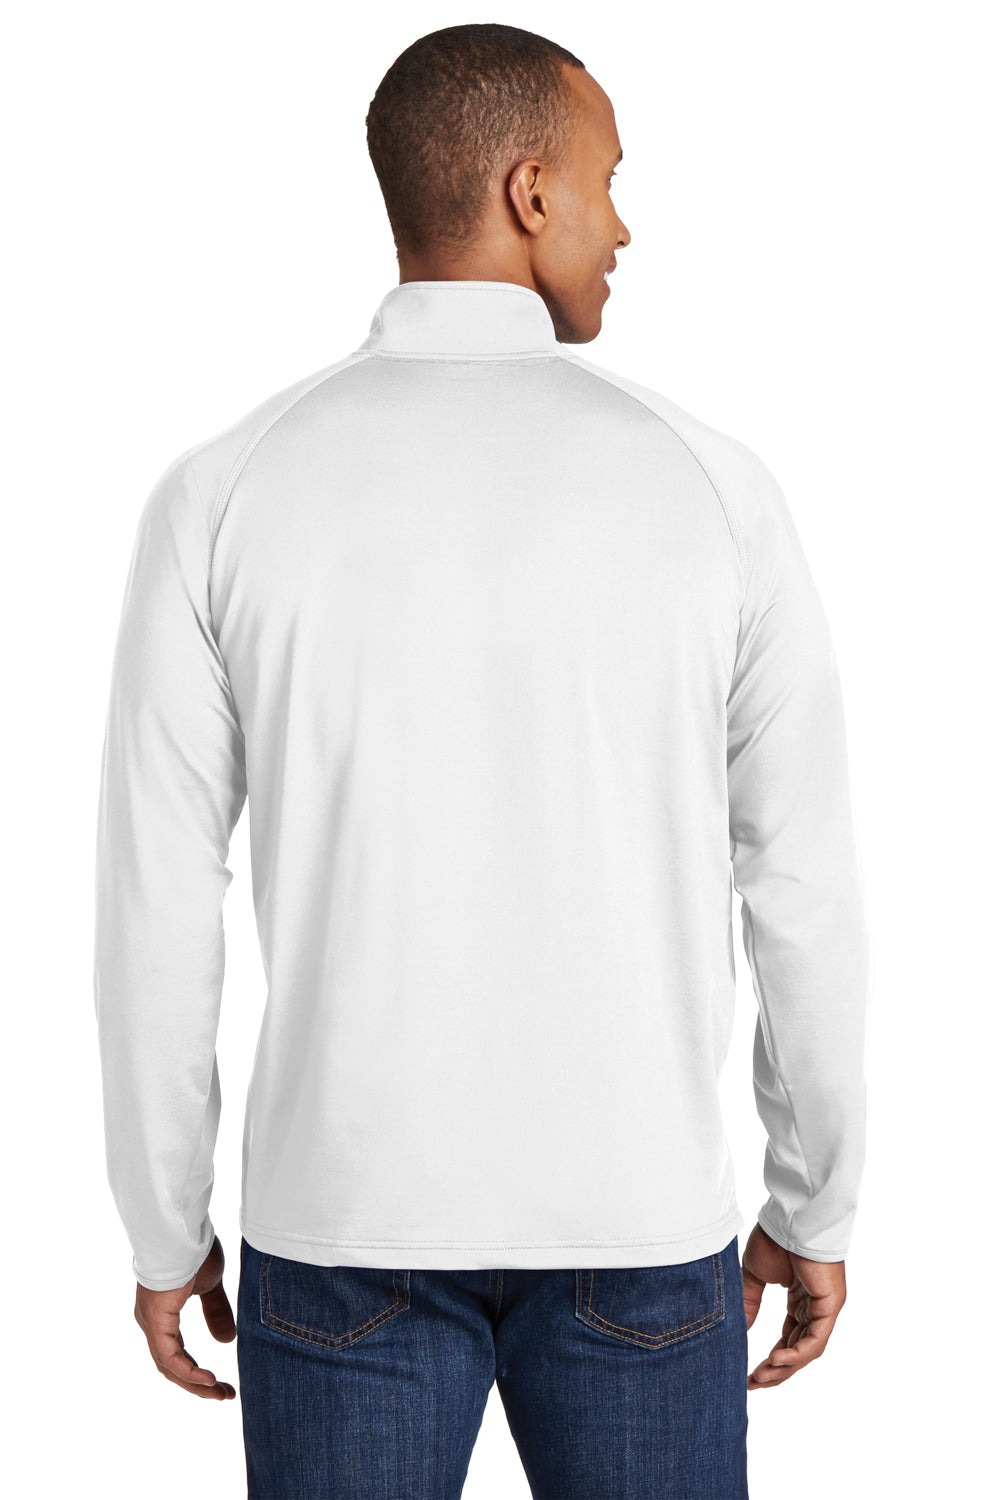 Sport-Tek ST850 Mens Sport-Wick Moisture Wicking 1/4 Zip Sweatshirt White Back